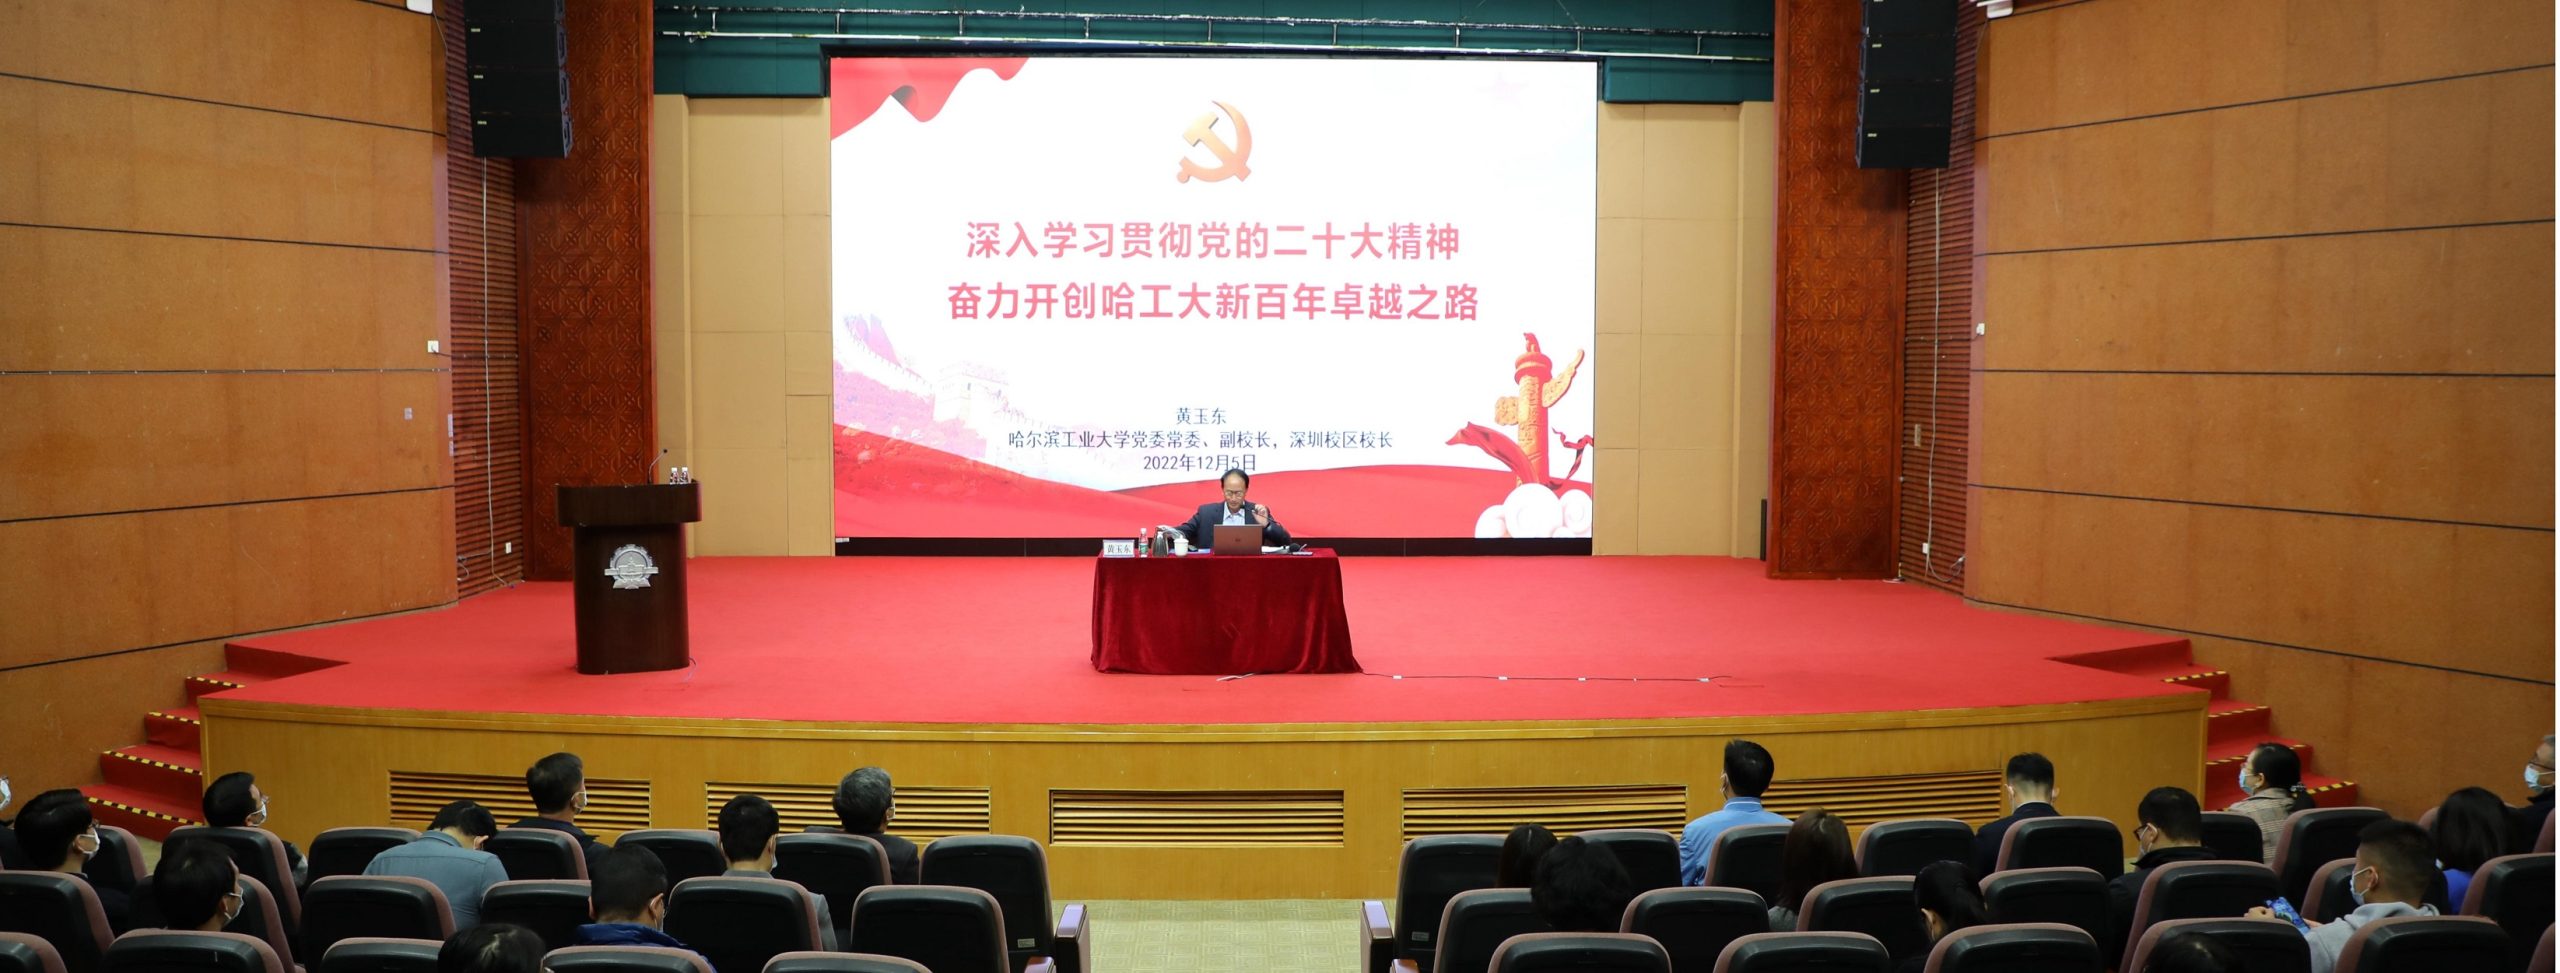 黄玉东吴德林向深圳校区师生宣讲党的二十大精神